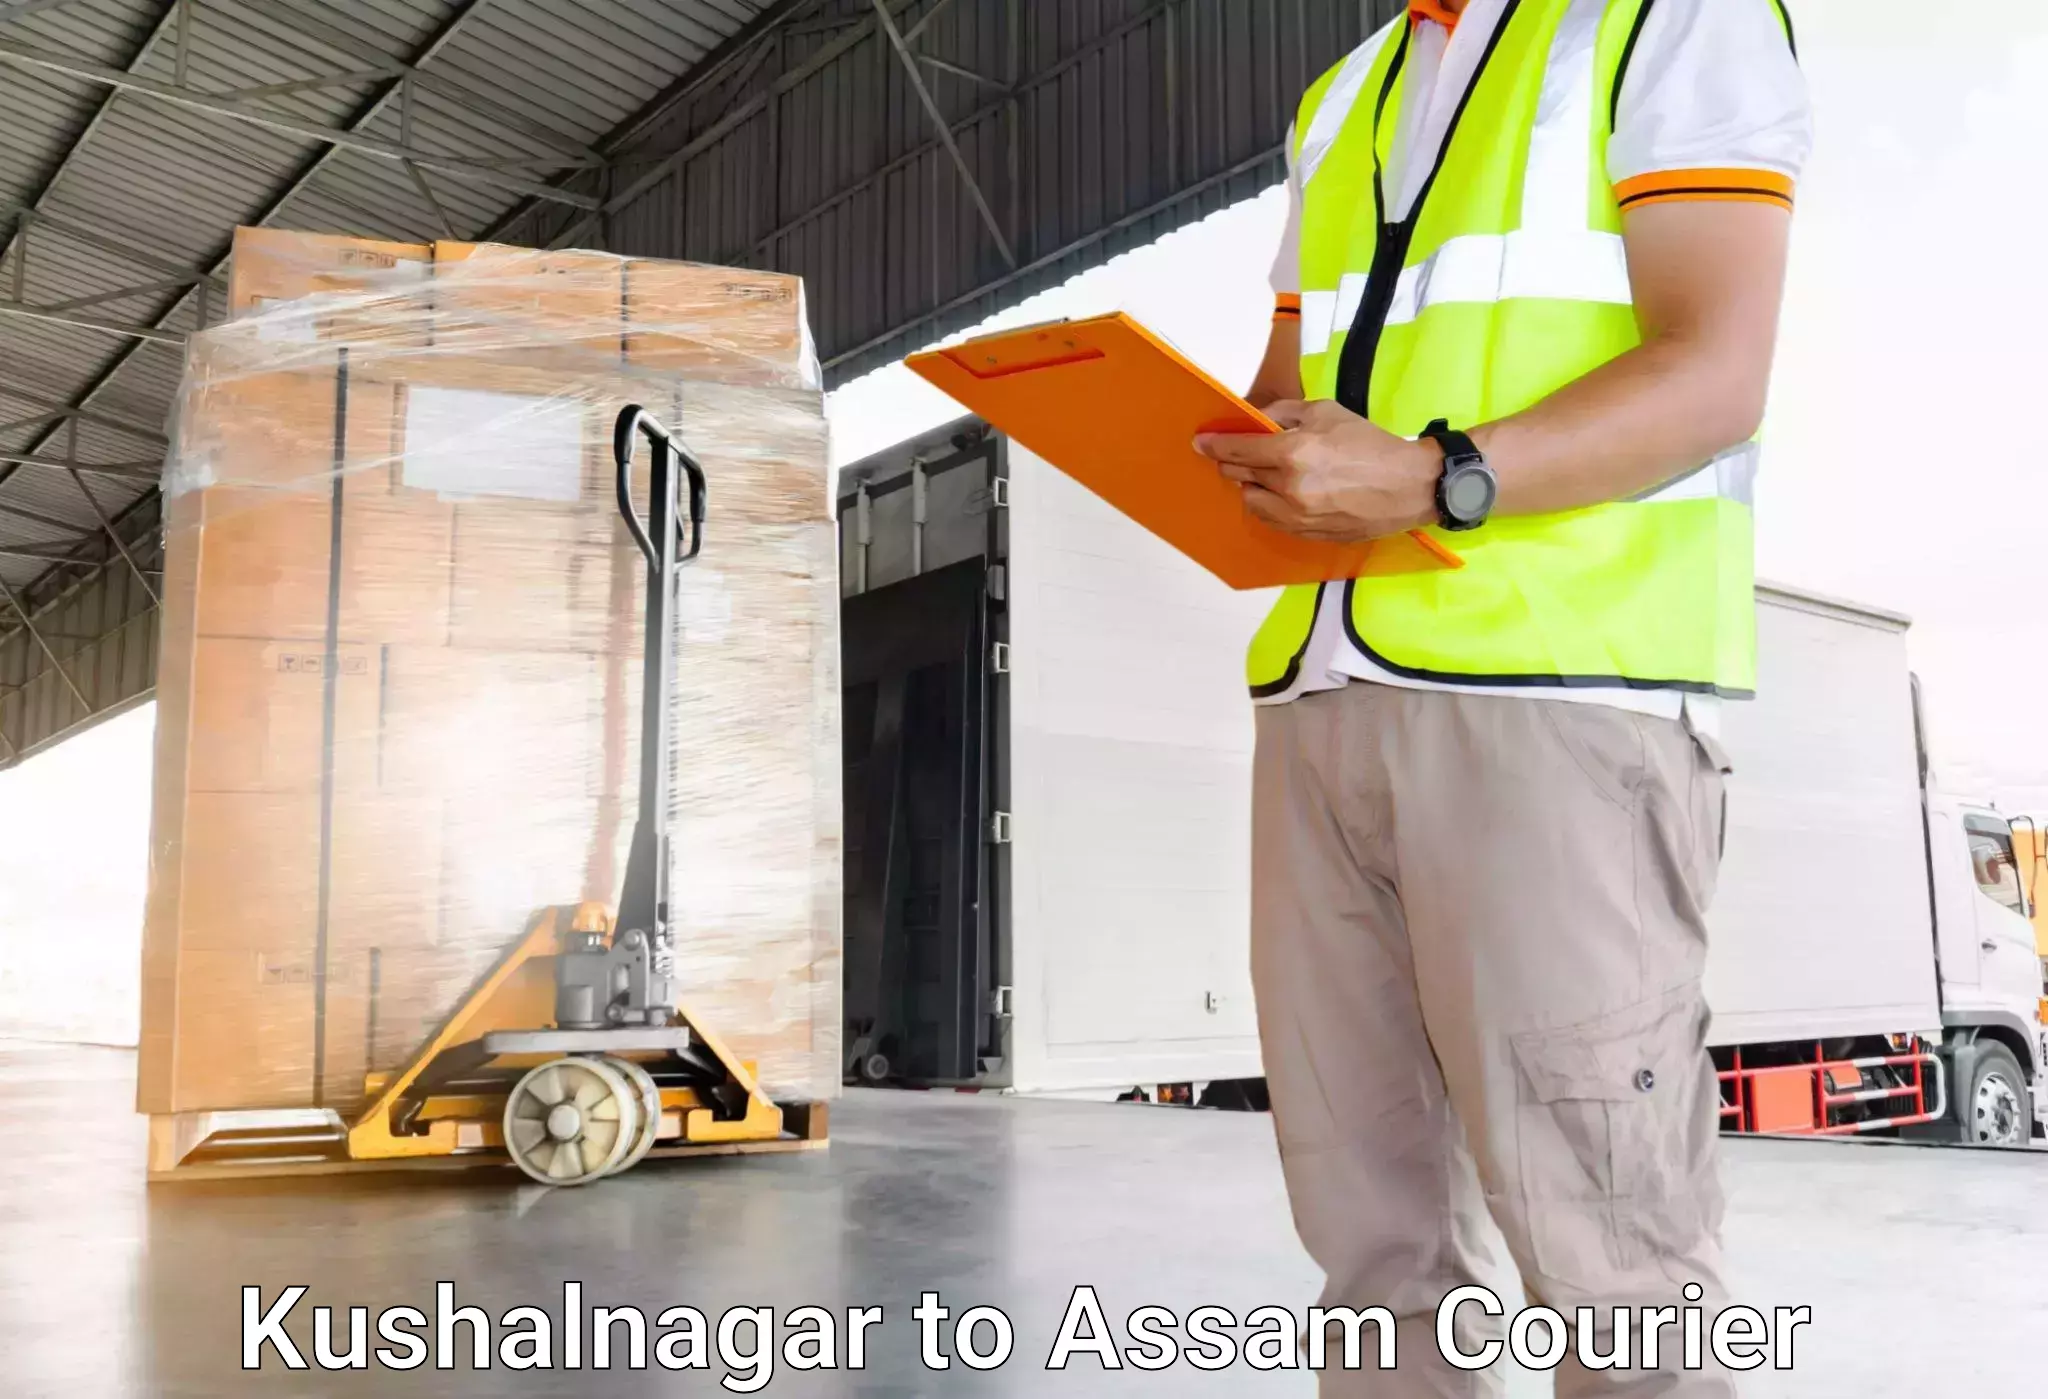 Urgent luggage shipment Kushalnagar to Dhekiajuli